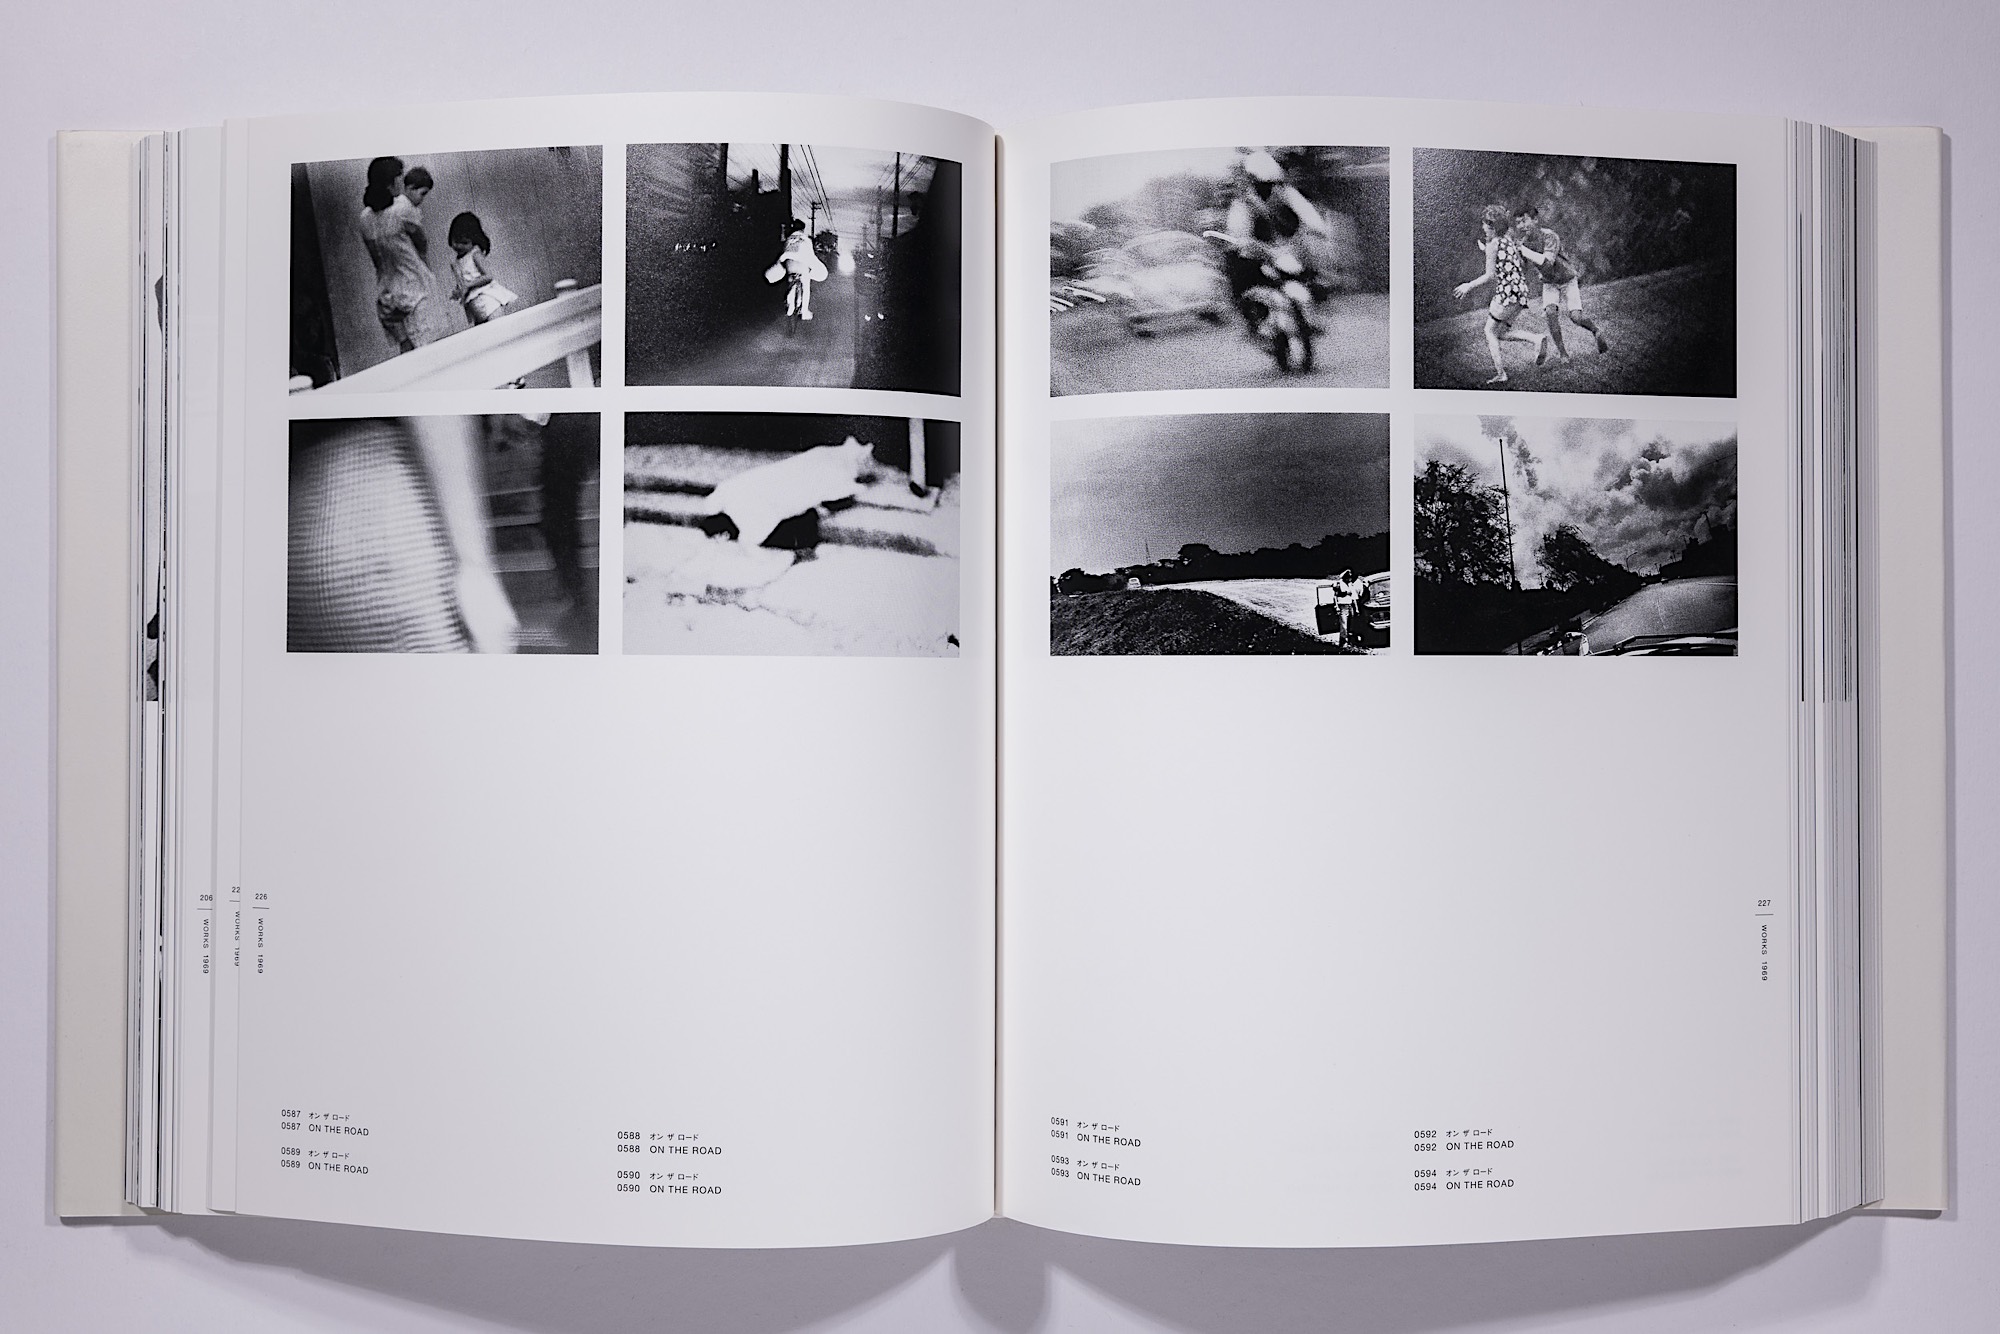 Daido Moriyama - The Complete Works of Daido Moriyama Image 63